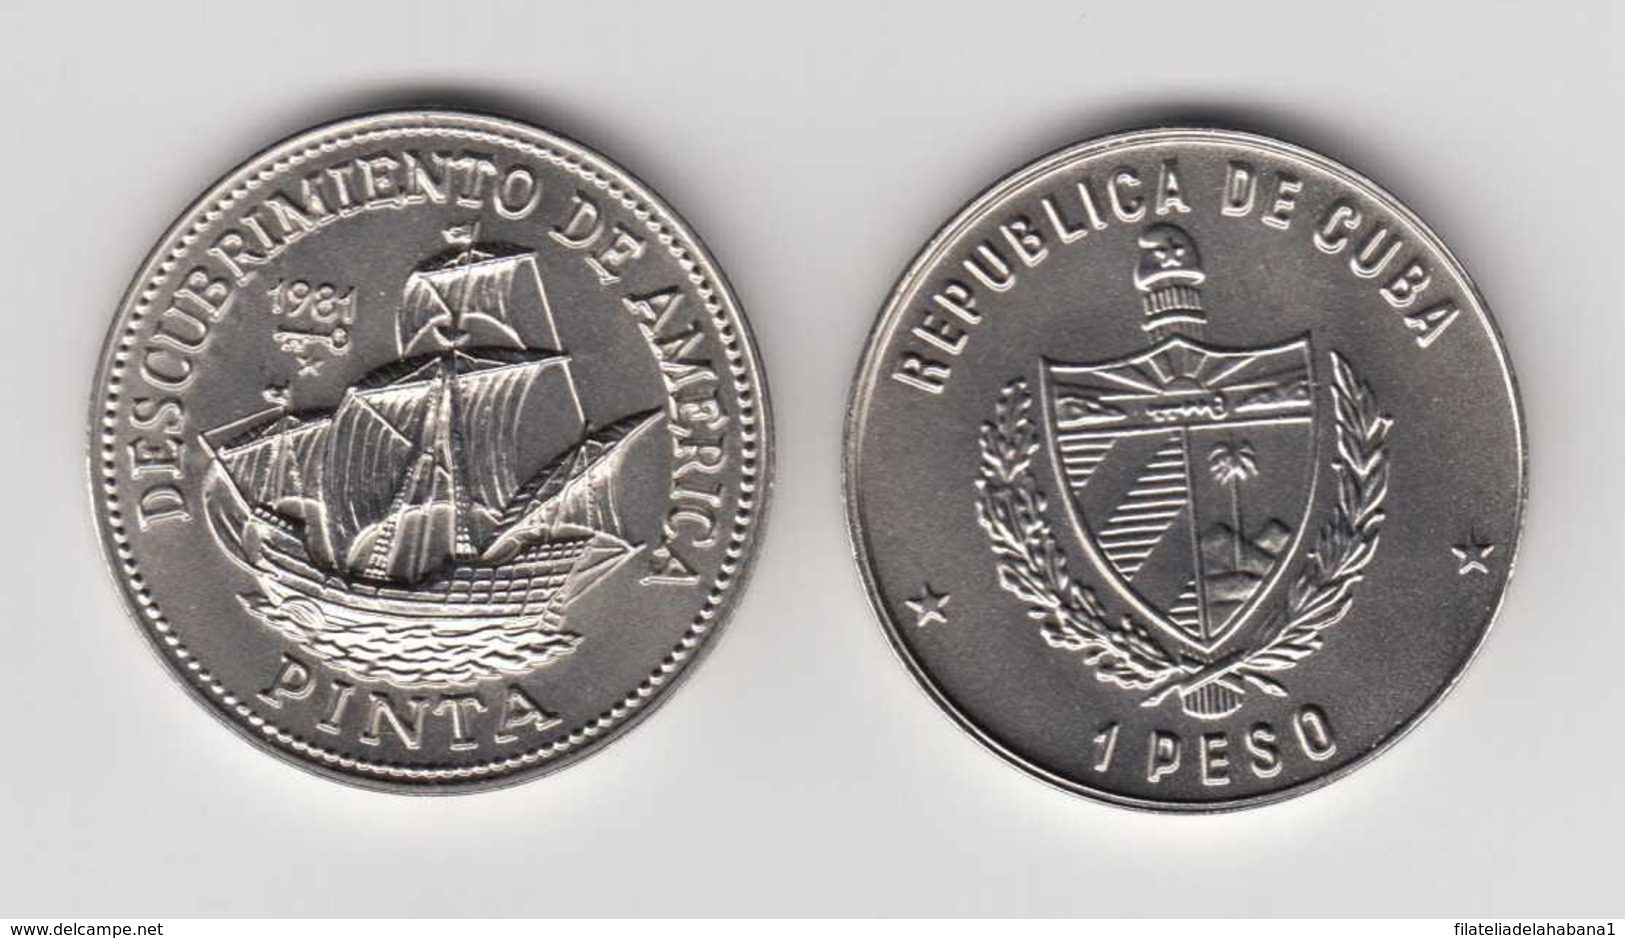 1981-MN-5 CUBA. KM 66. 1$. 1981. COPPER- NICKEL. UNC. CARAVELA LA PINTA. DESCUBRIMIENTO. DISCOVERY SHIP. - Cuba